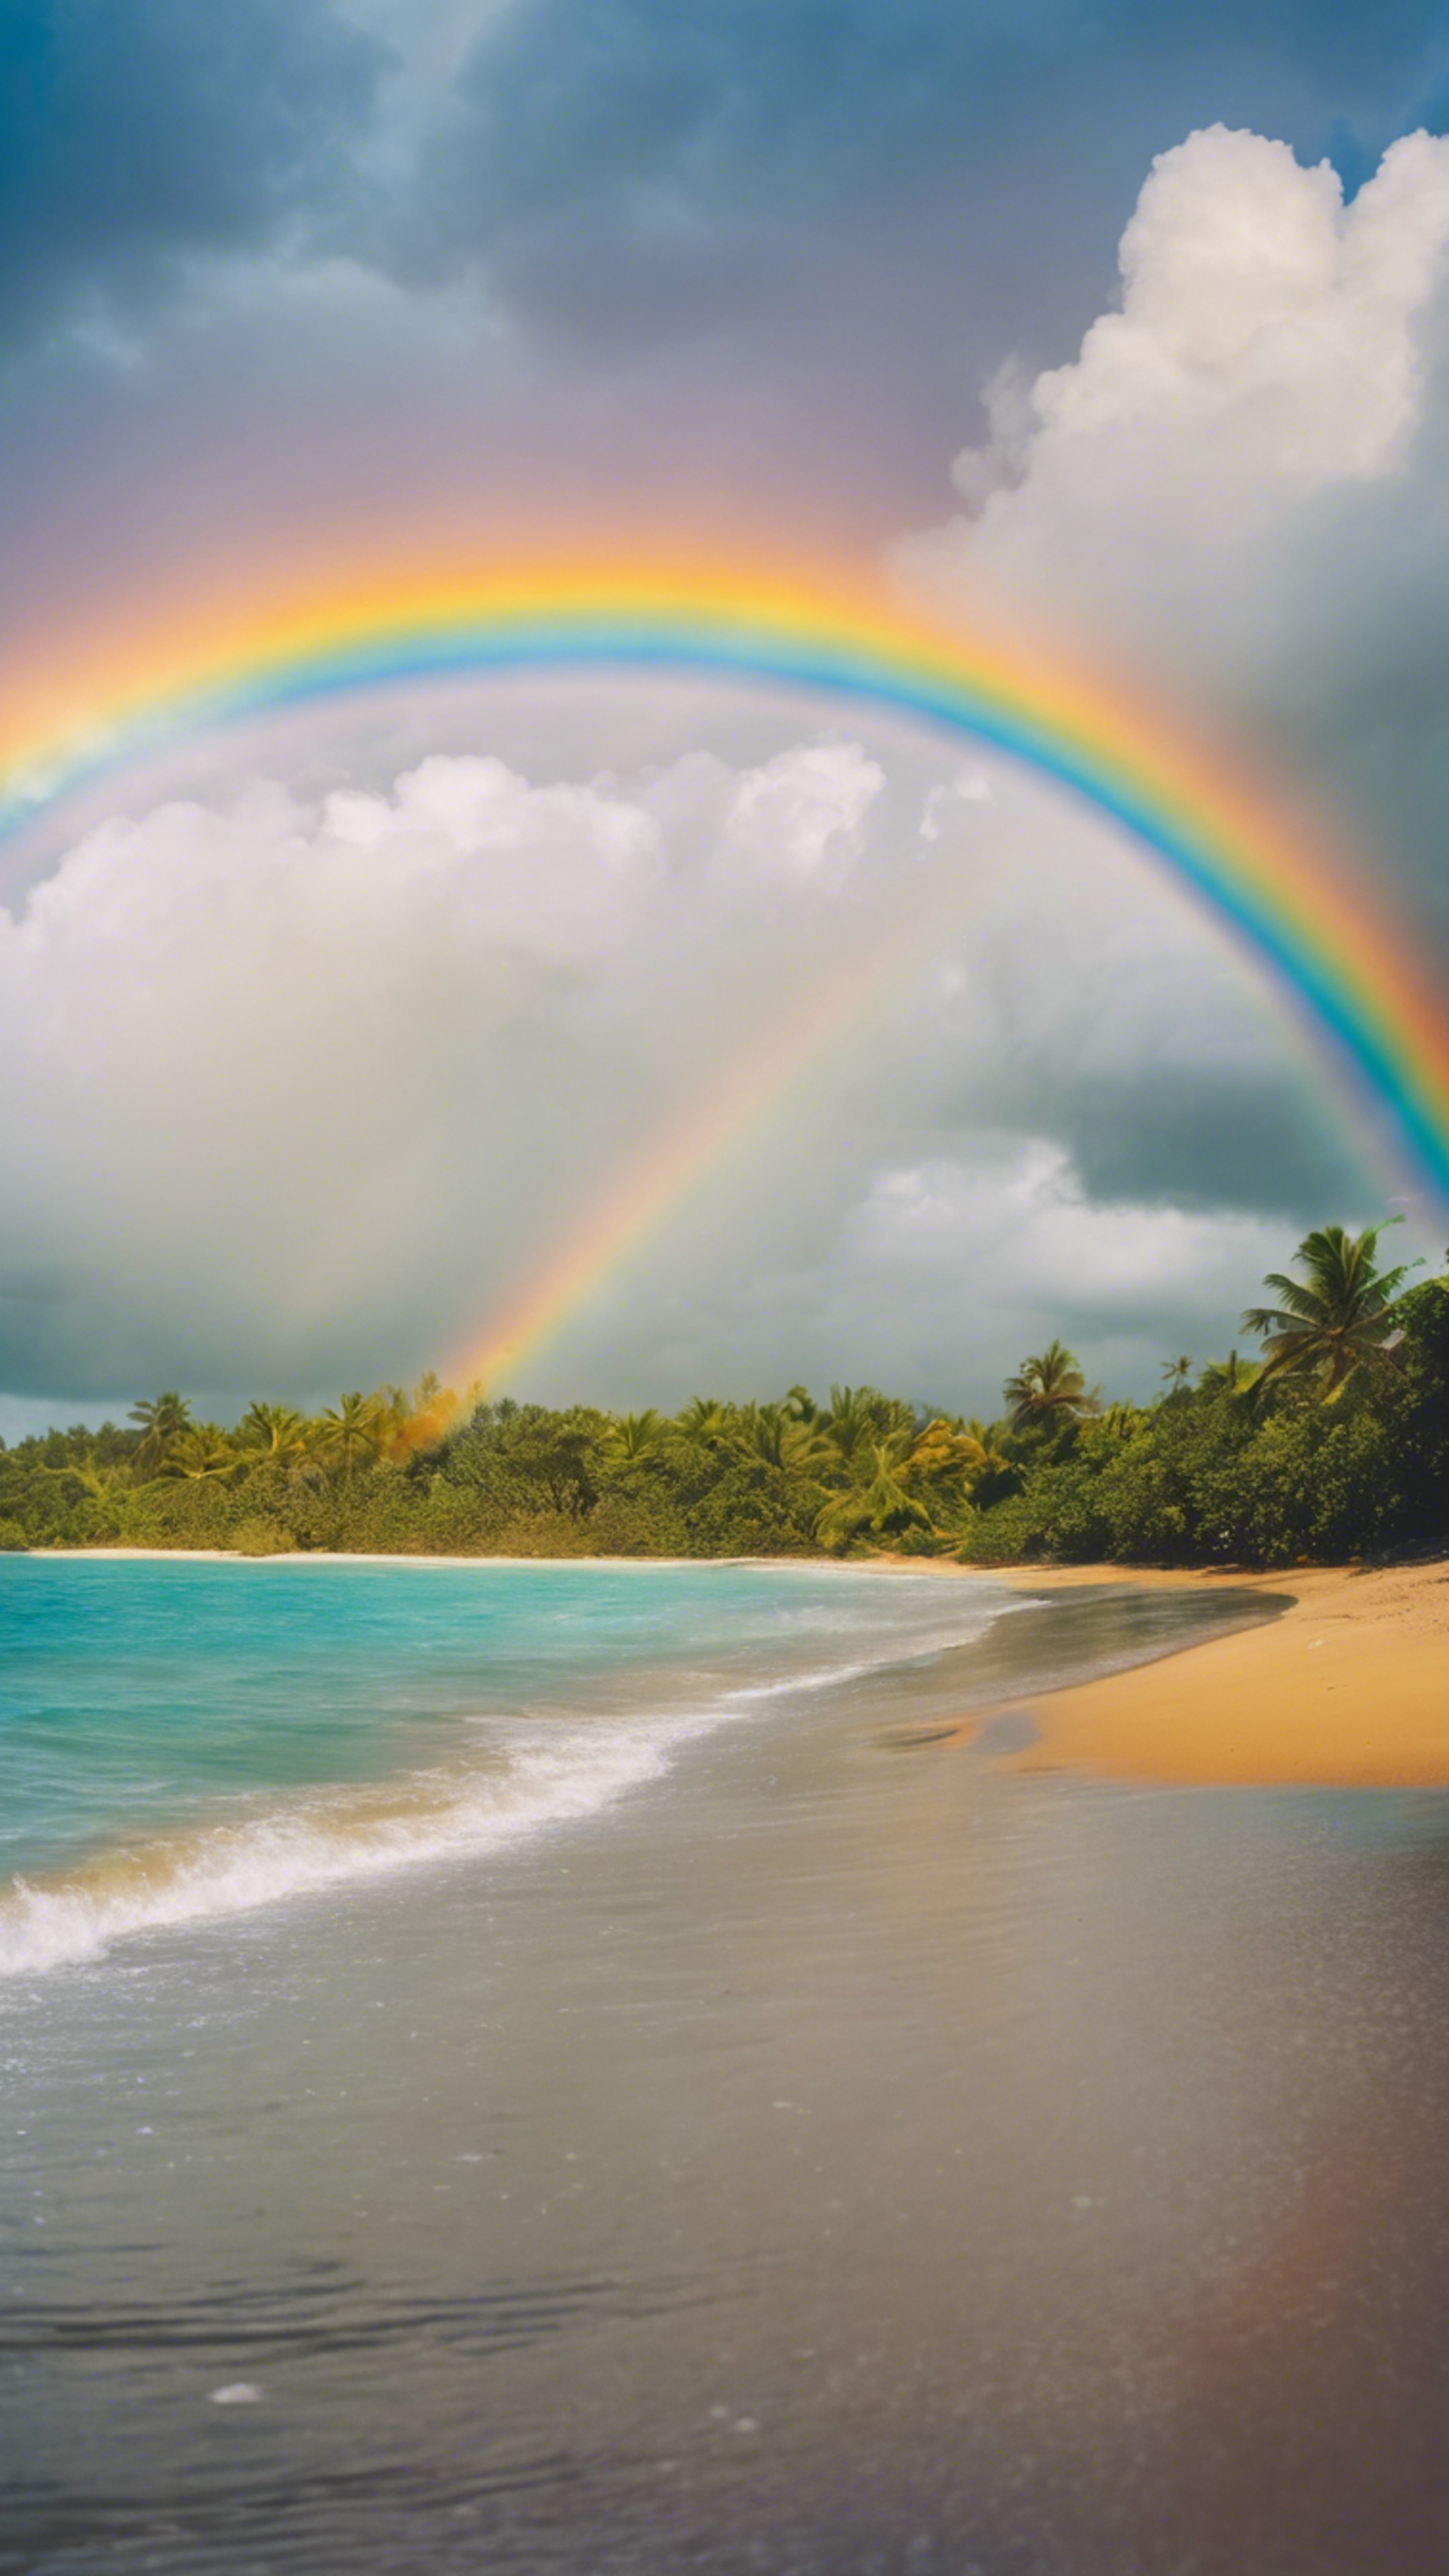 Vivid rainbow arcing across the sky after a rainfall at a tropical beach. 벽지[d3854ca165cf432a9c18]